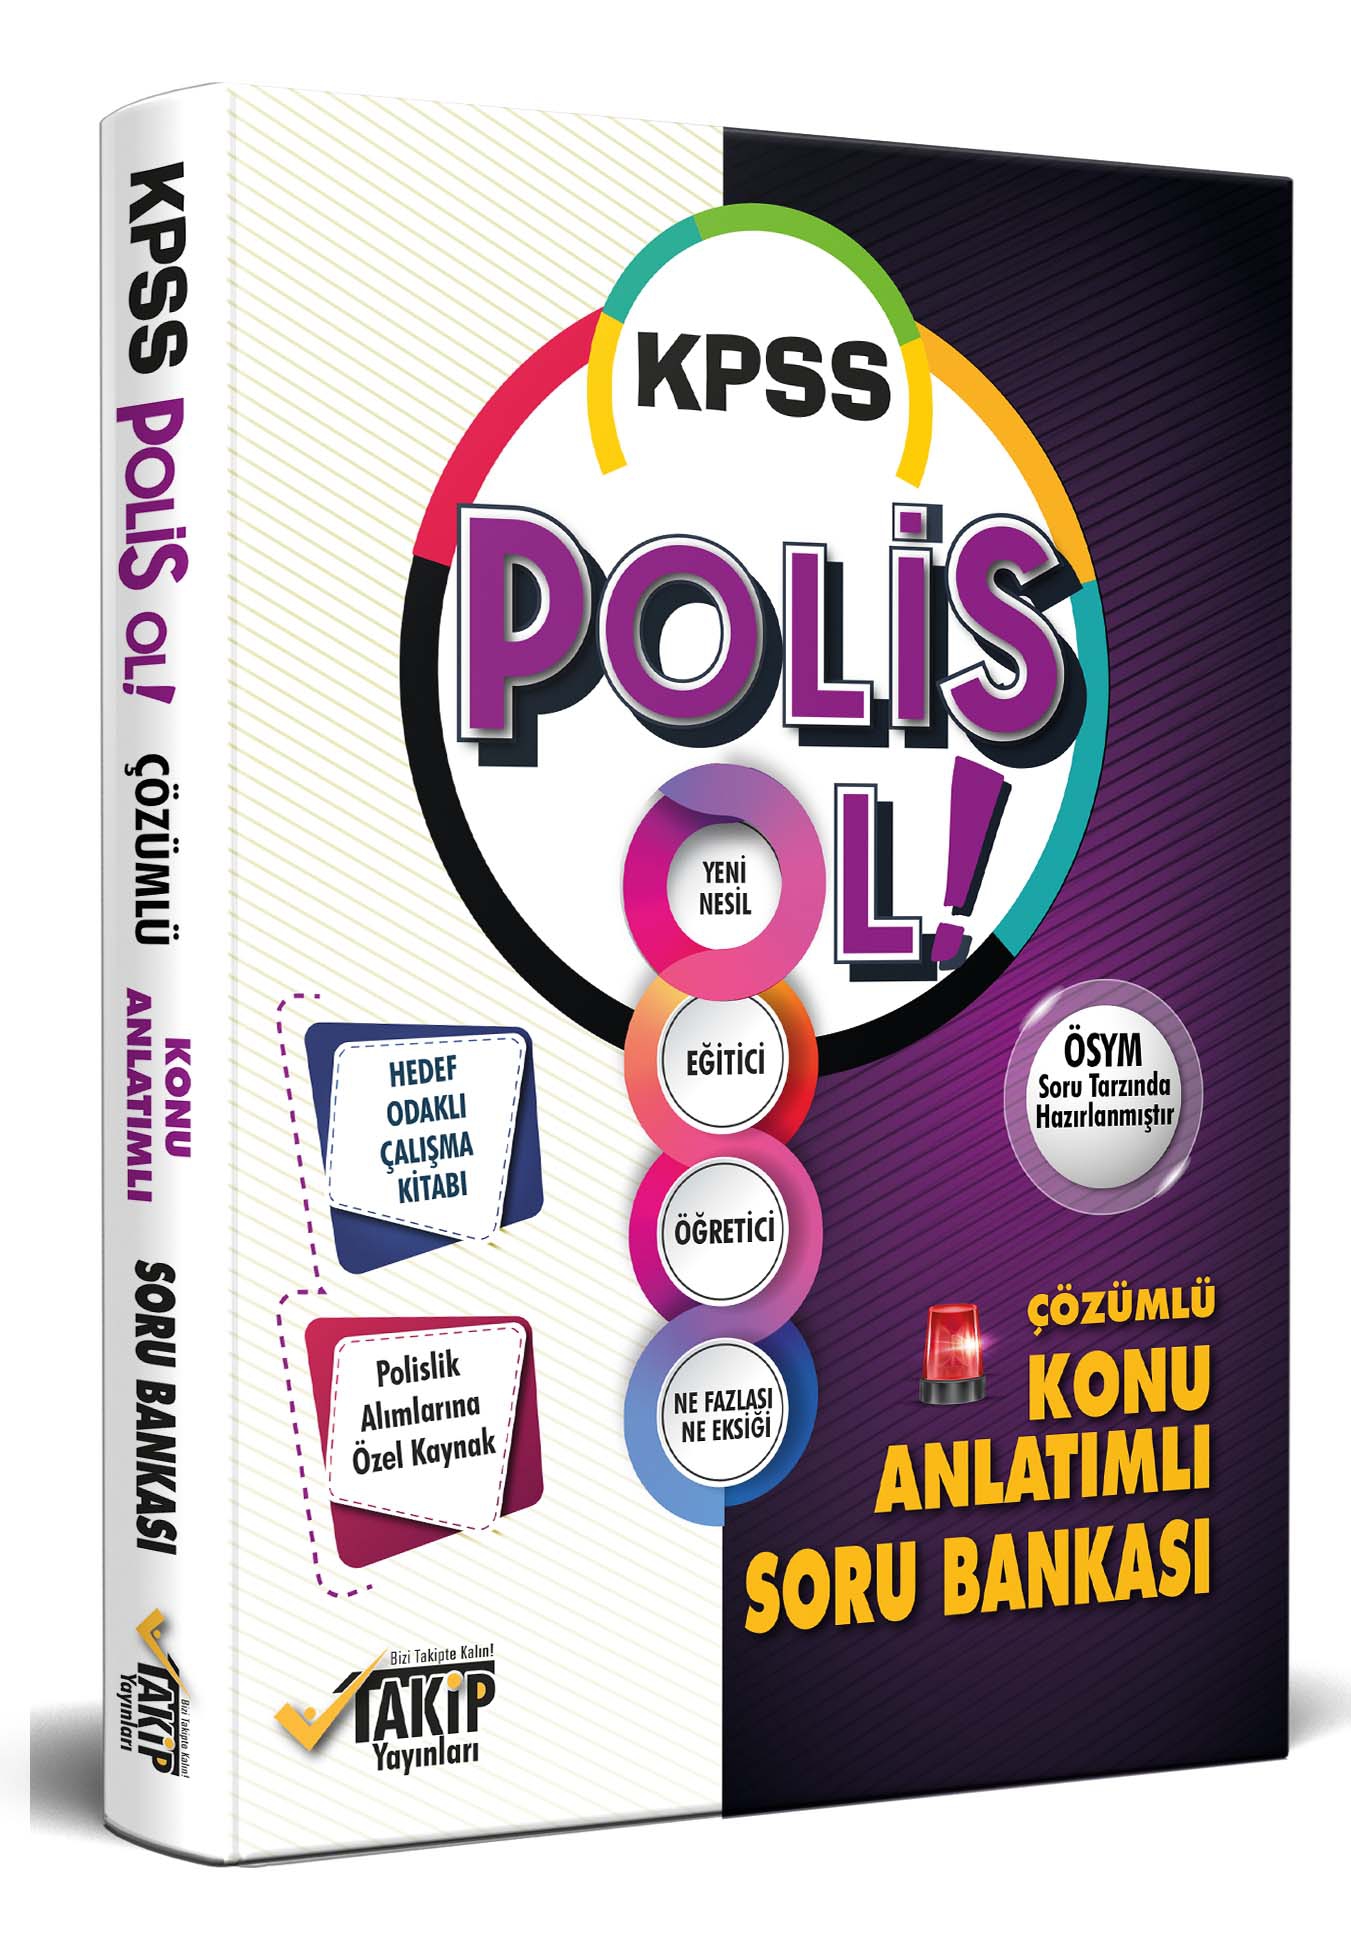 KPSS POLİS OL - Konu Anlatımlı Soru Bankası-Hedef Odaklı Çalışma Kitabı-2021 KPSS Özel Hazırlık